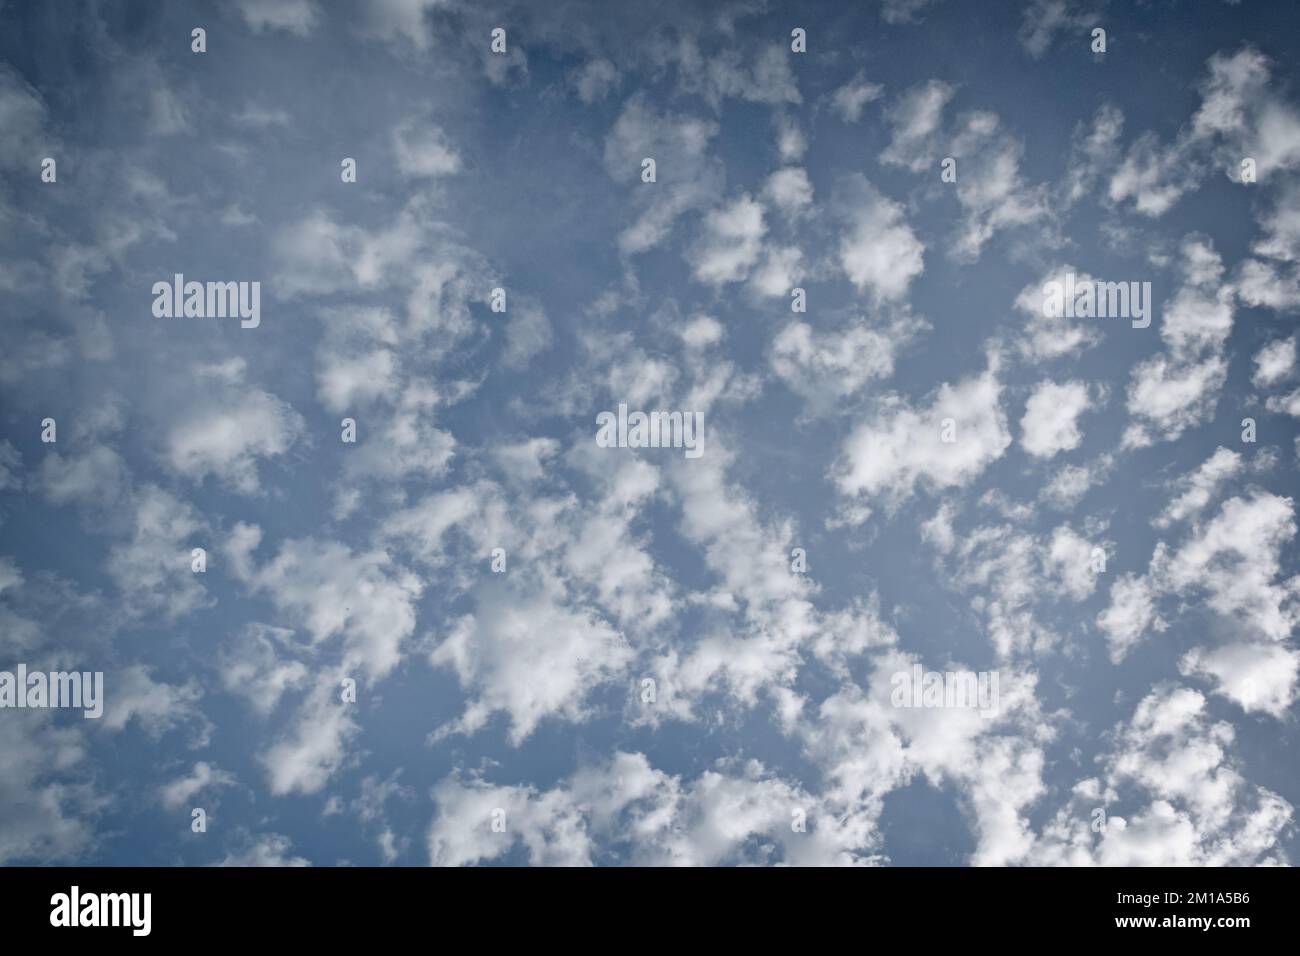 Weiße Altocumulus-Wolken, mit Seitenlicht, vor blauem Himmel; Landschaftsorientierung. Stockfoto